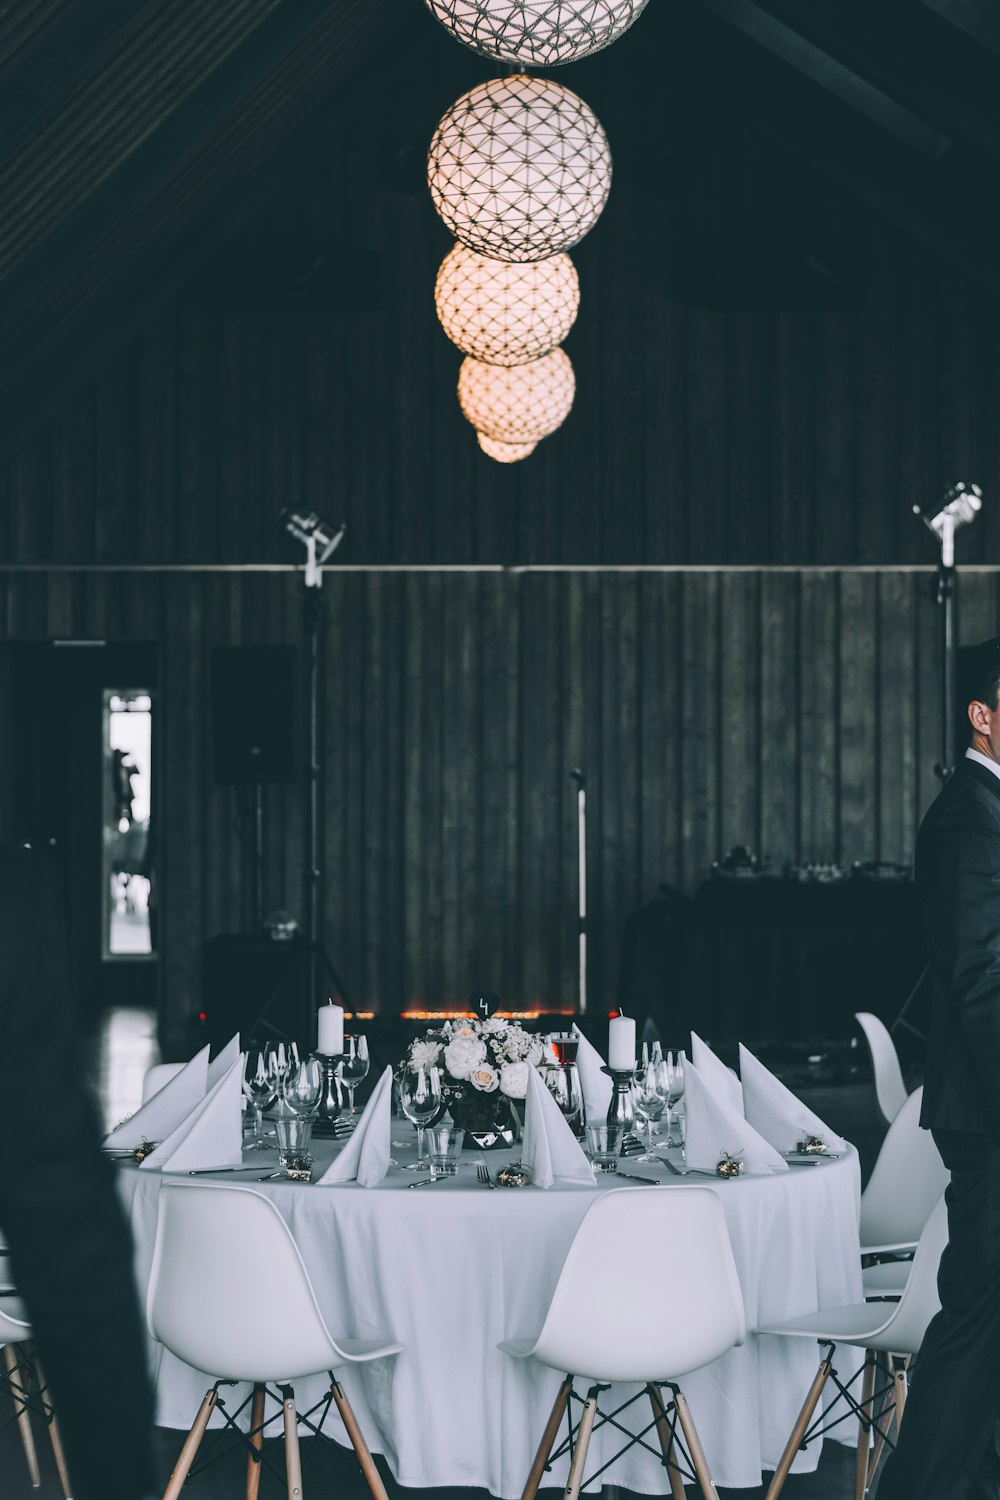 conjunto de jantar redondo branco e marrom com bola pendente lâmpadas fotografia